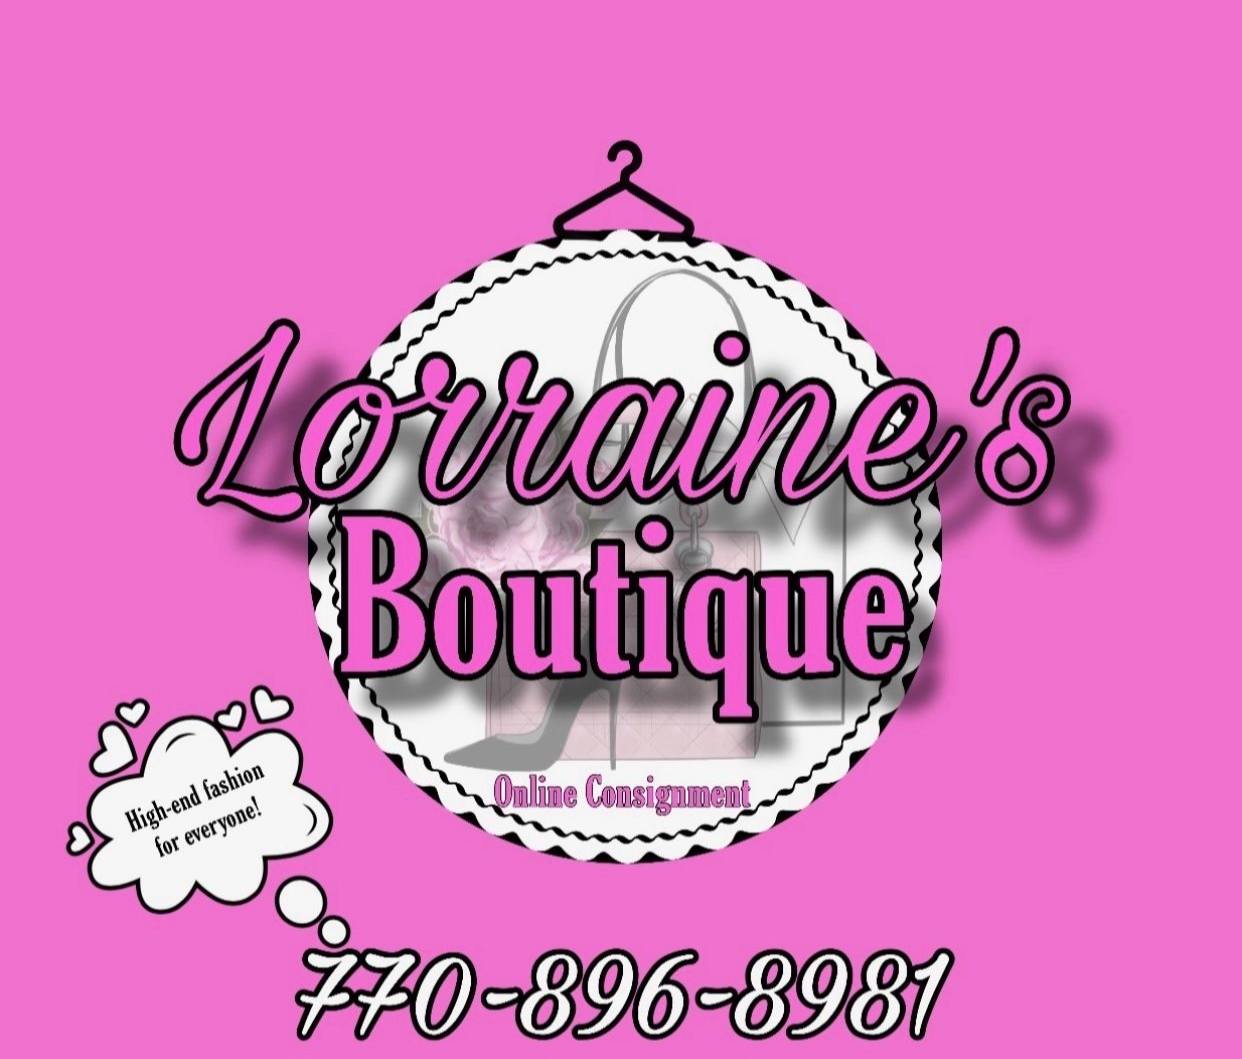 Lorraine’s Boutique